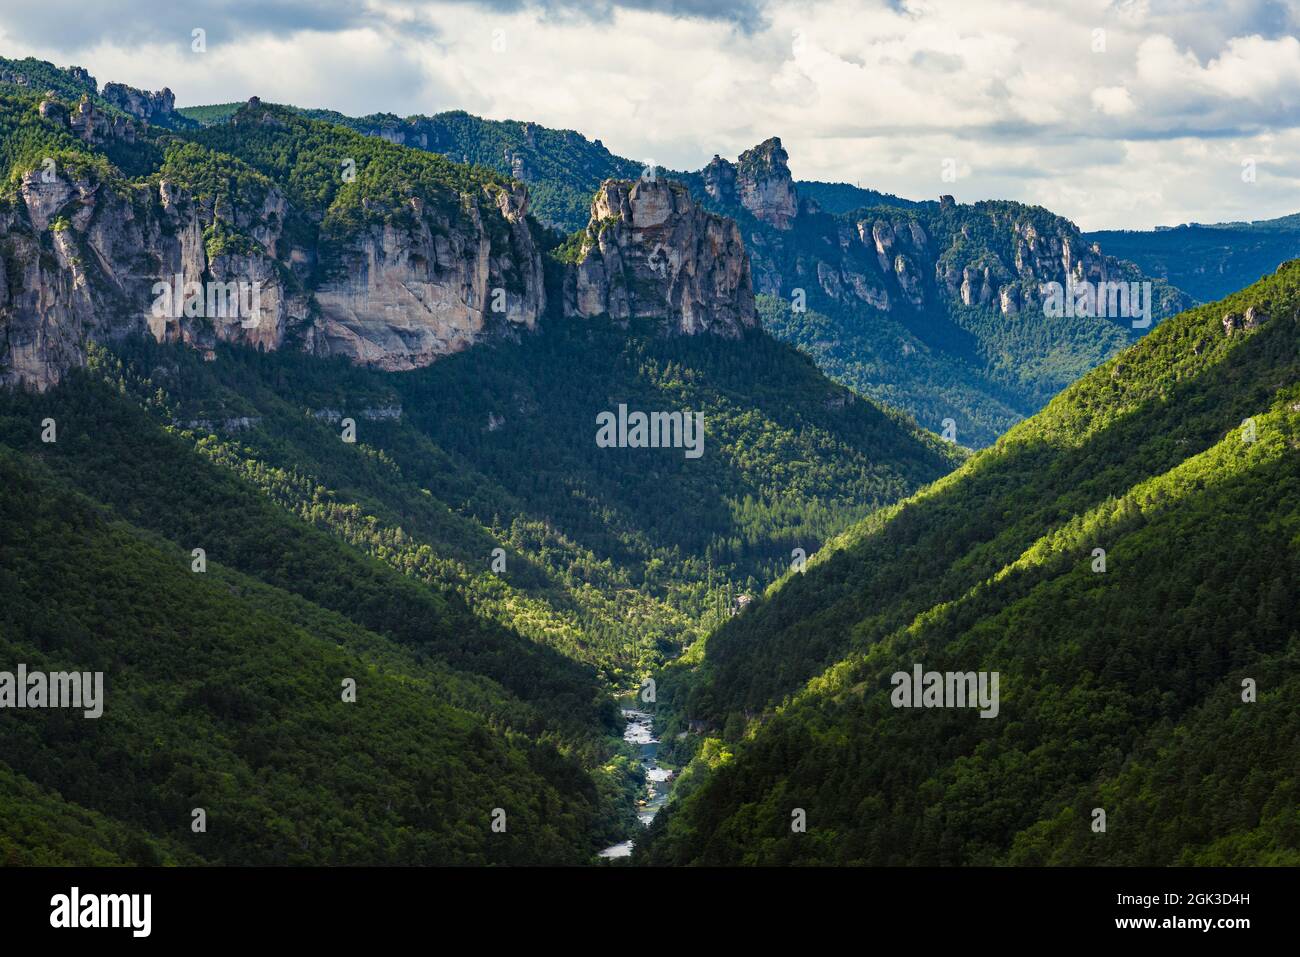 Die Schluchten des Flusses Tarn. Erhöhter Blick auf eine reine Naturlandschaft im Süden Frankreichs. Stockfoto